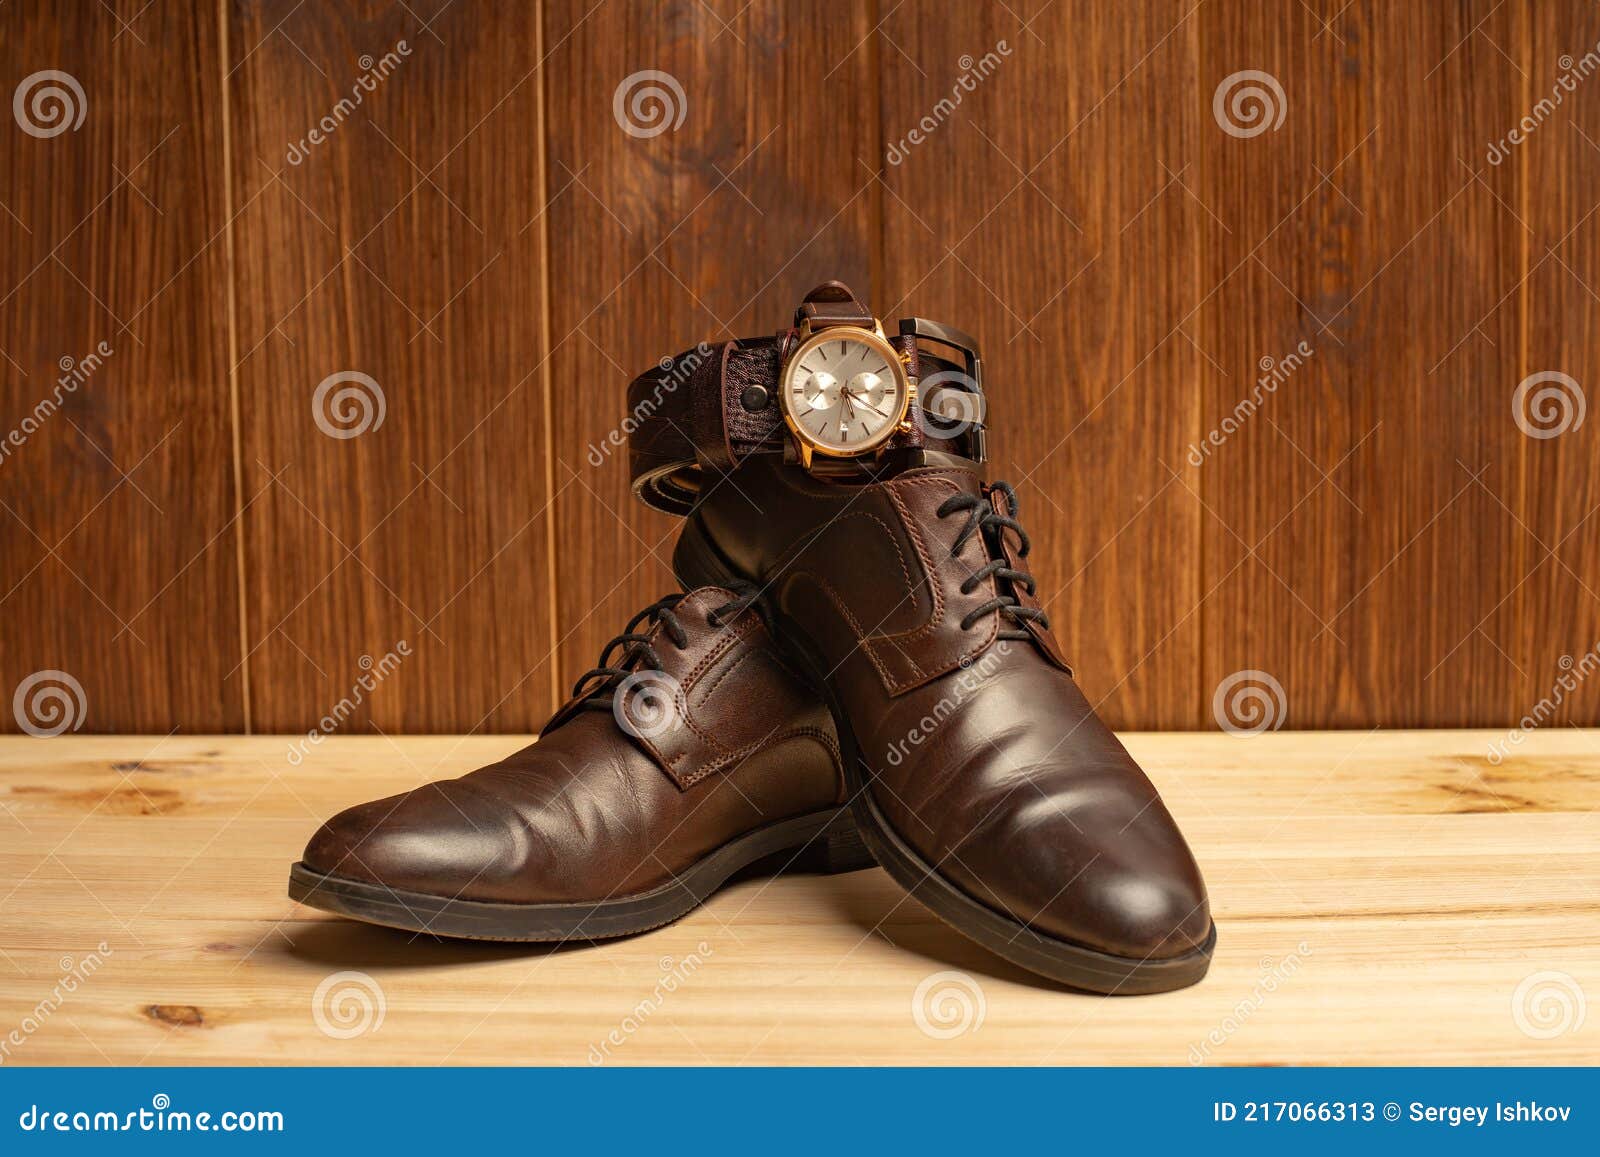 Accesorios Para Hombre Con Zapatos De De Cuero Marrón Y Reloj Sobre Fondo De Madera Imagen de archivo - Imagen de tapa, estilo: 217066313